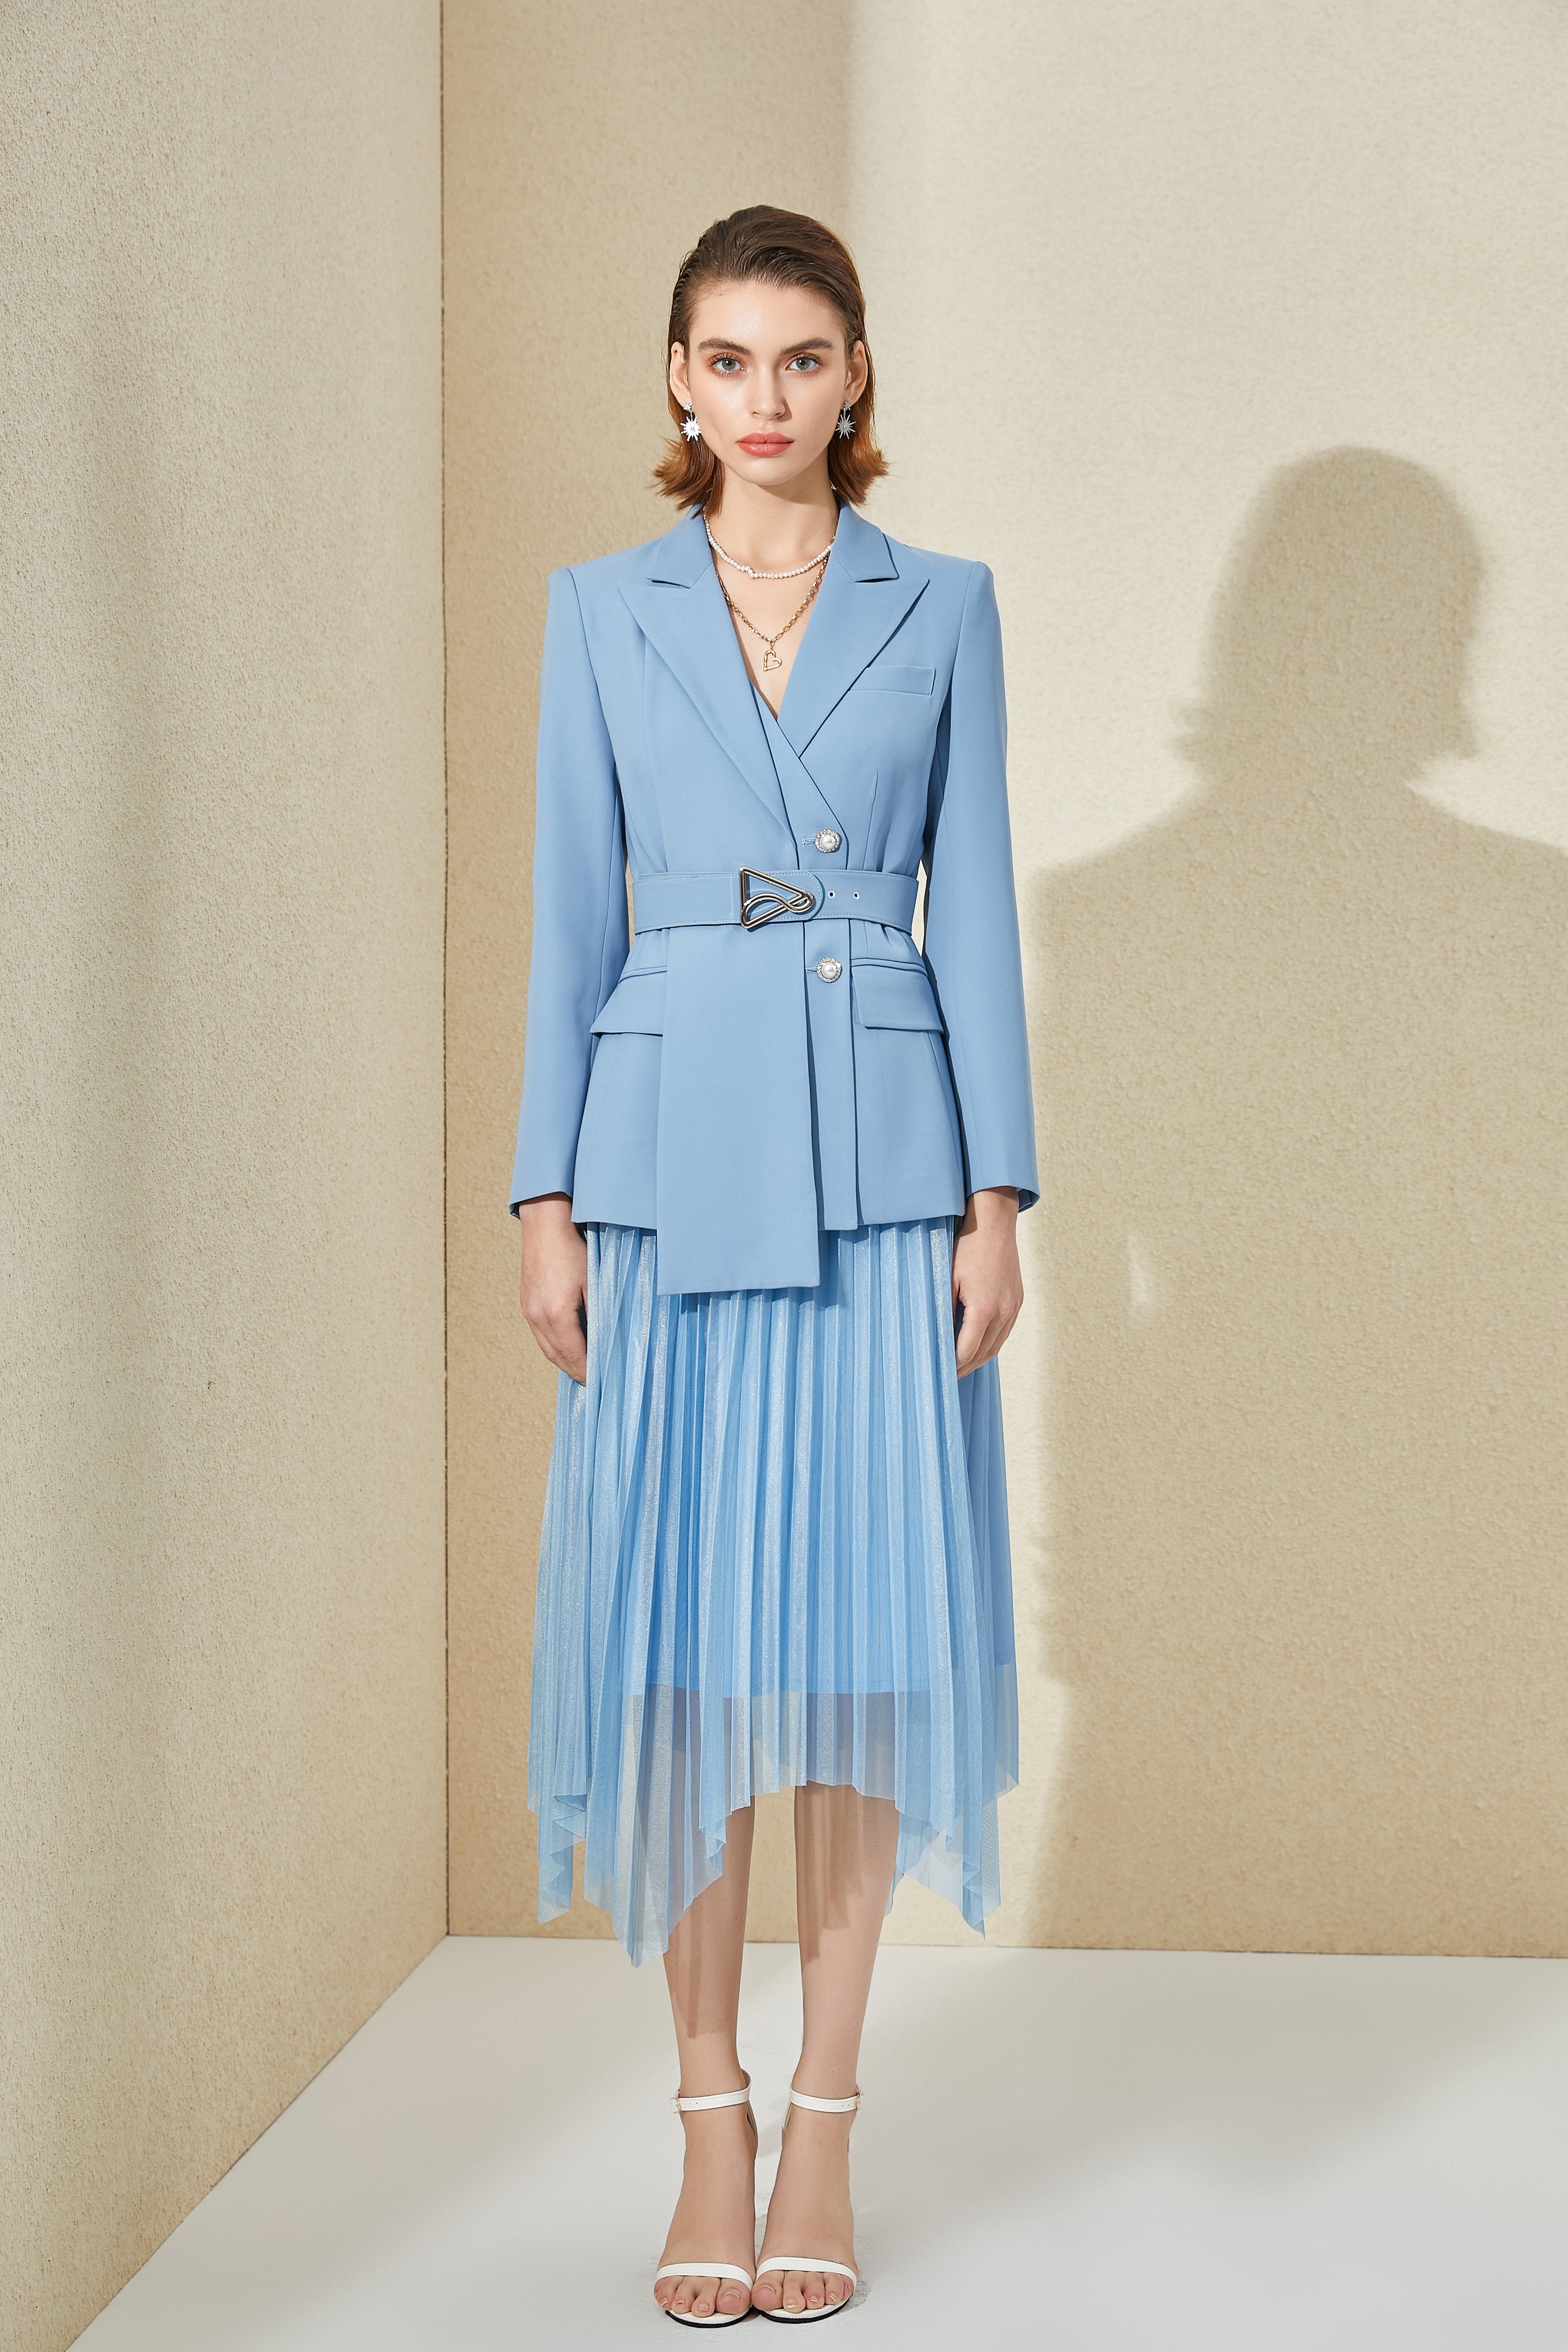 Light Blue V-neck With Pleated Skirt Blazer Skirt Suits - FashionByTeresa